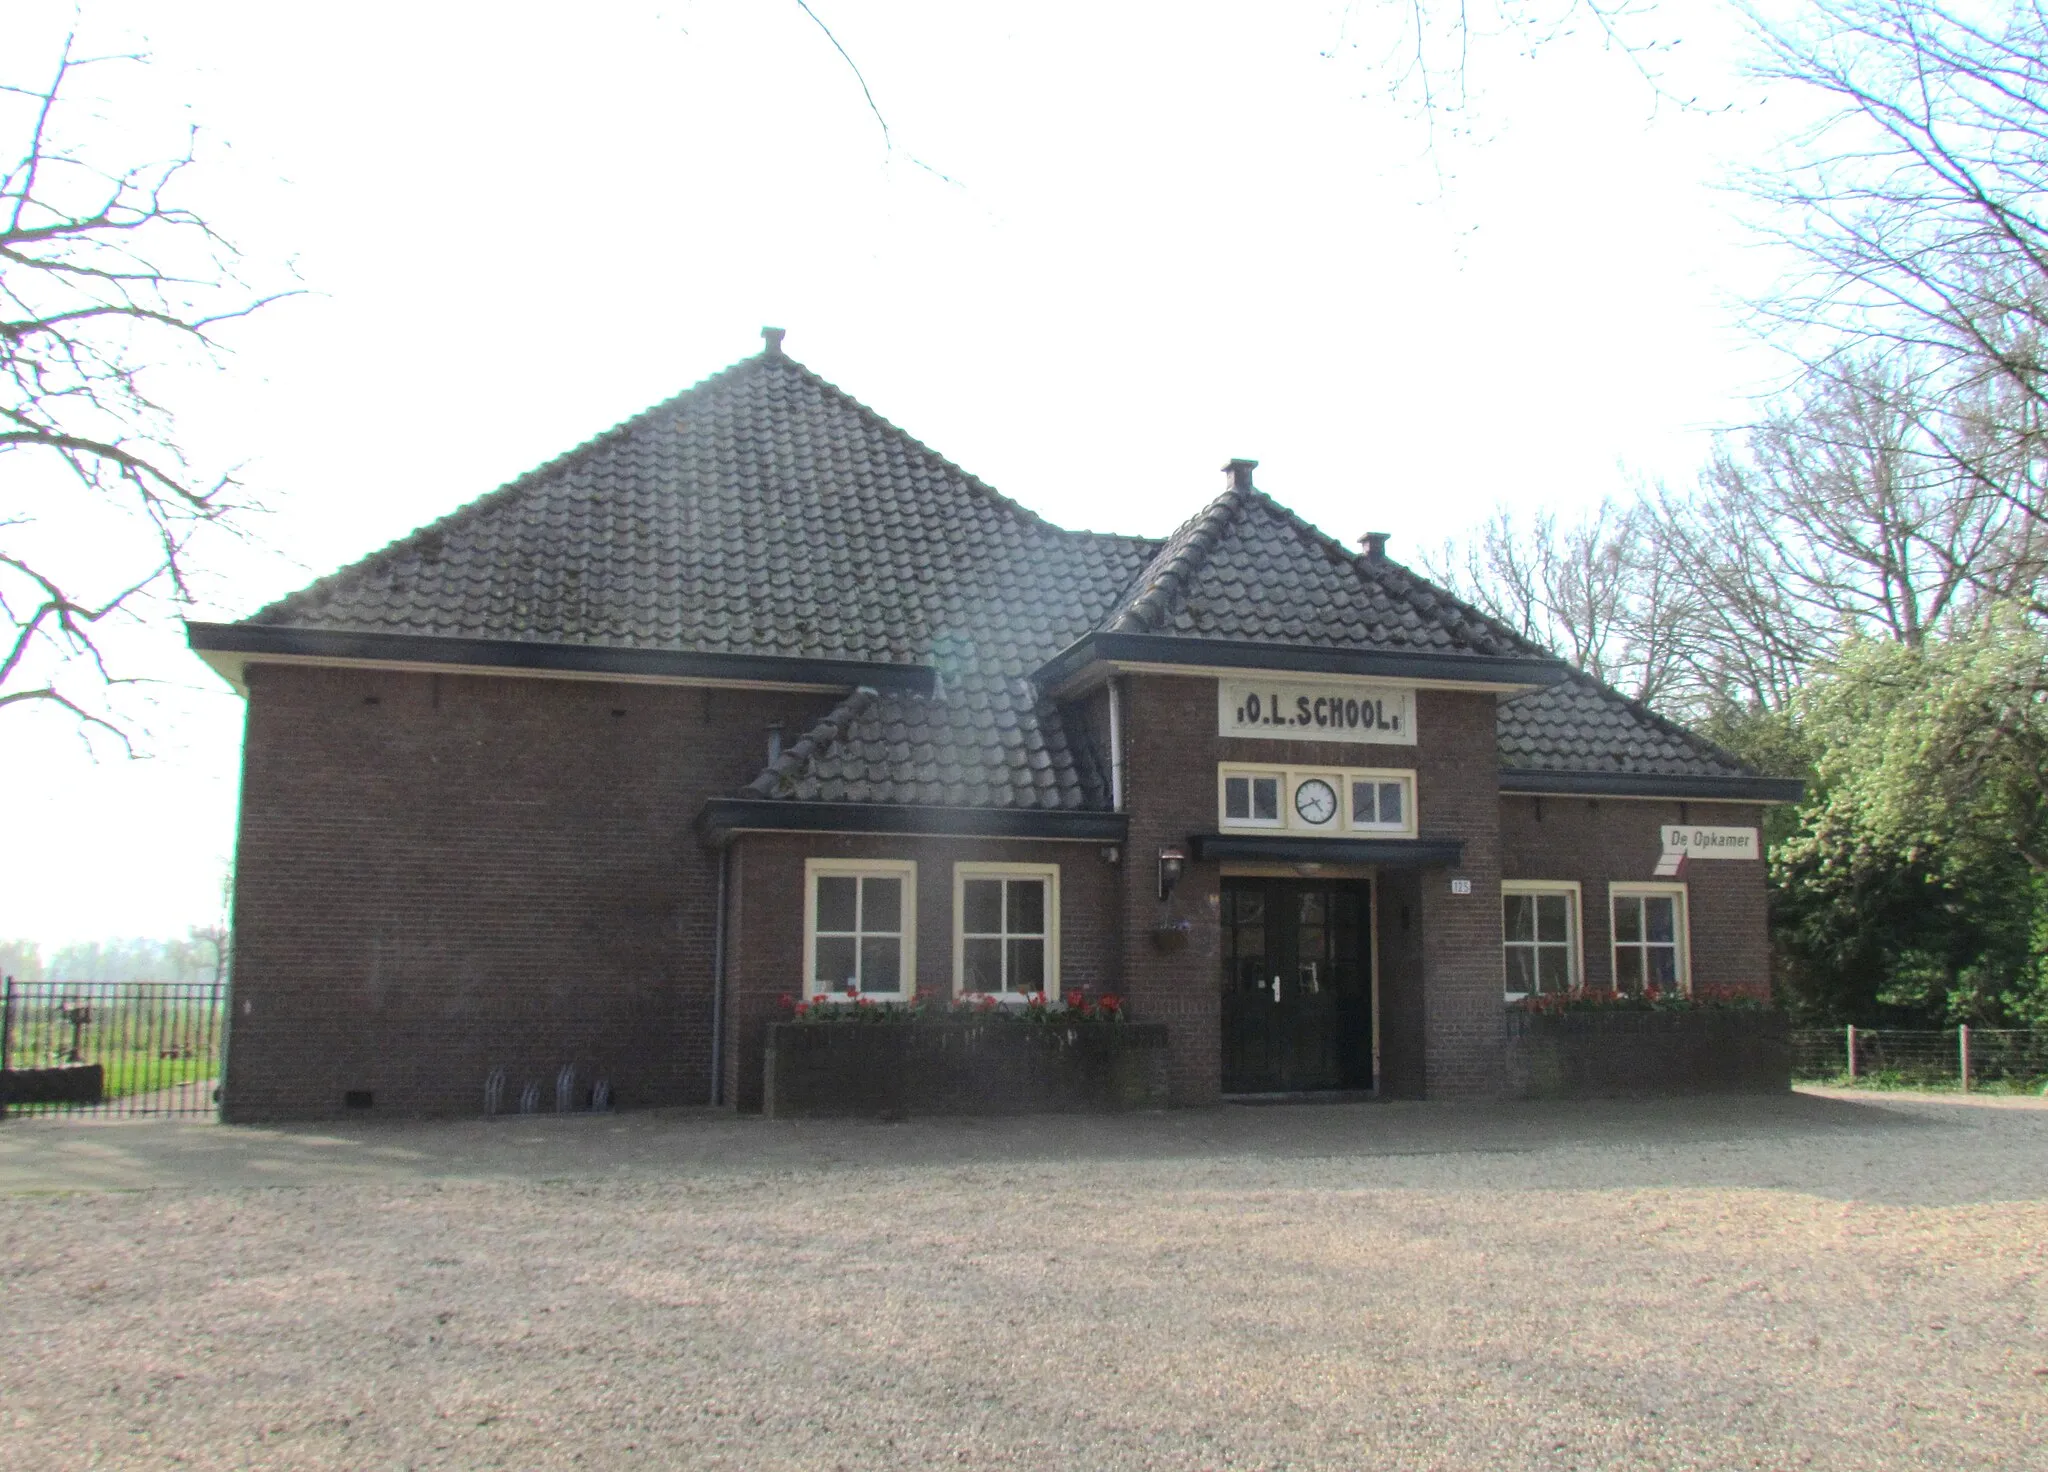 Photo showing: Voormalige openbare lagere school "De Vossestaart" in Oeken (gemeente Brummen, NL), Voorsterweg 125. Gemeentelijk monument en anno 2014 in functie als locatie voor buitenschoolse opvang